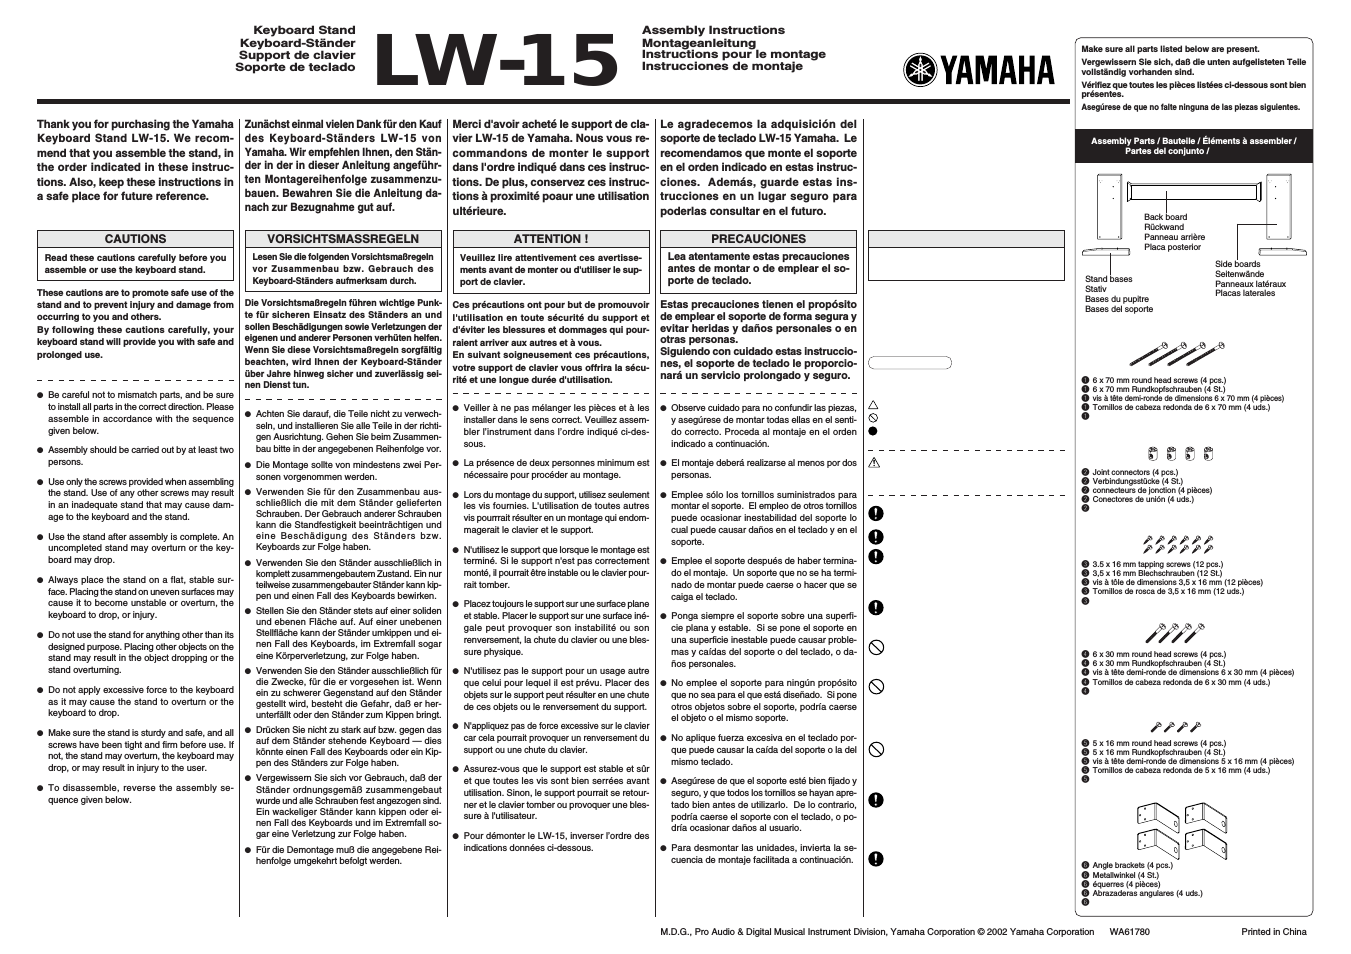 LW-15